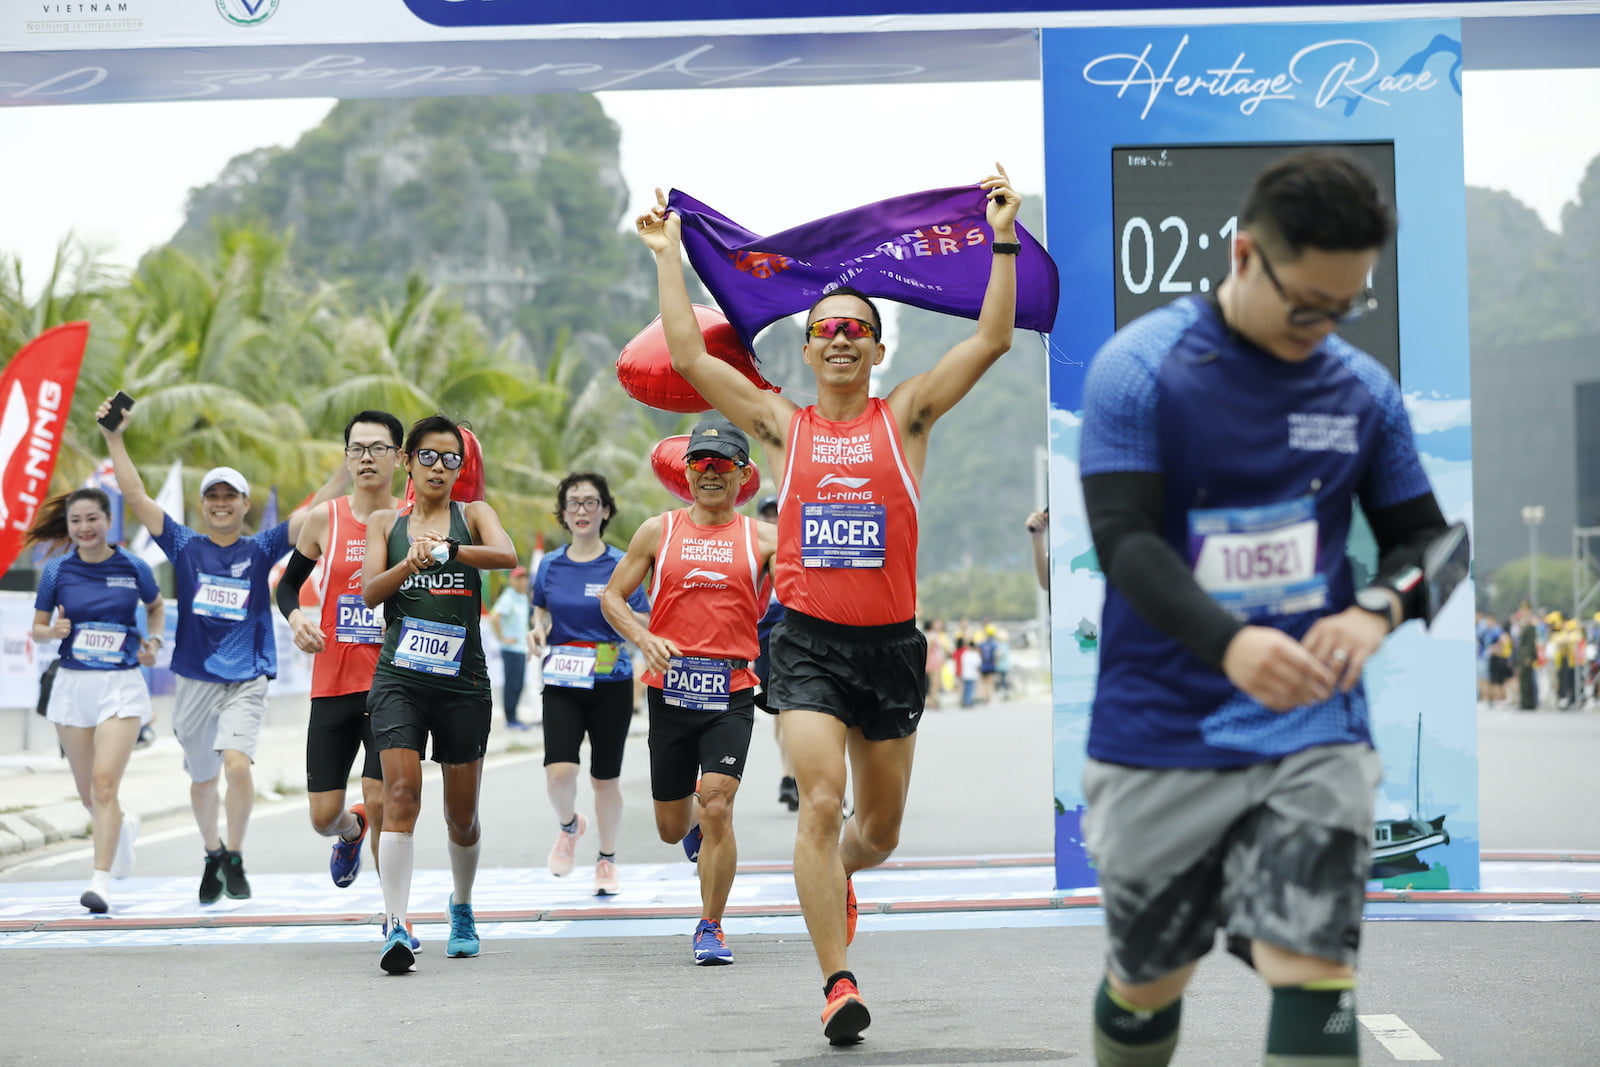 [QC] Những người bạn đồng hành đáng tin cậy trong Halong Bay Heritage Marathon 2020 - halong bay heritage marathon 2020 4